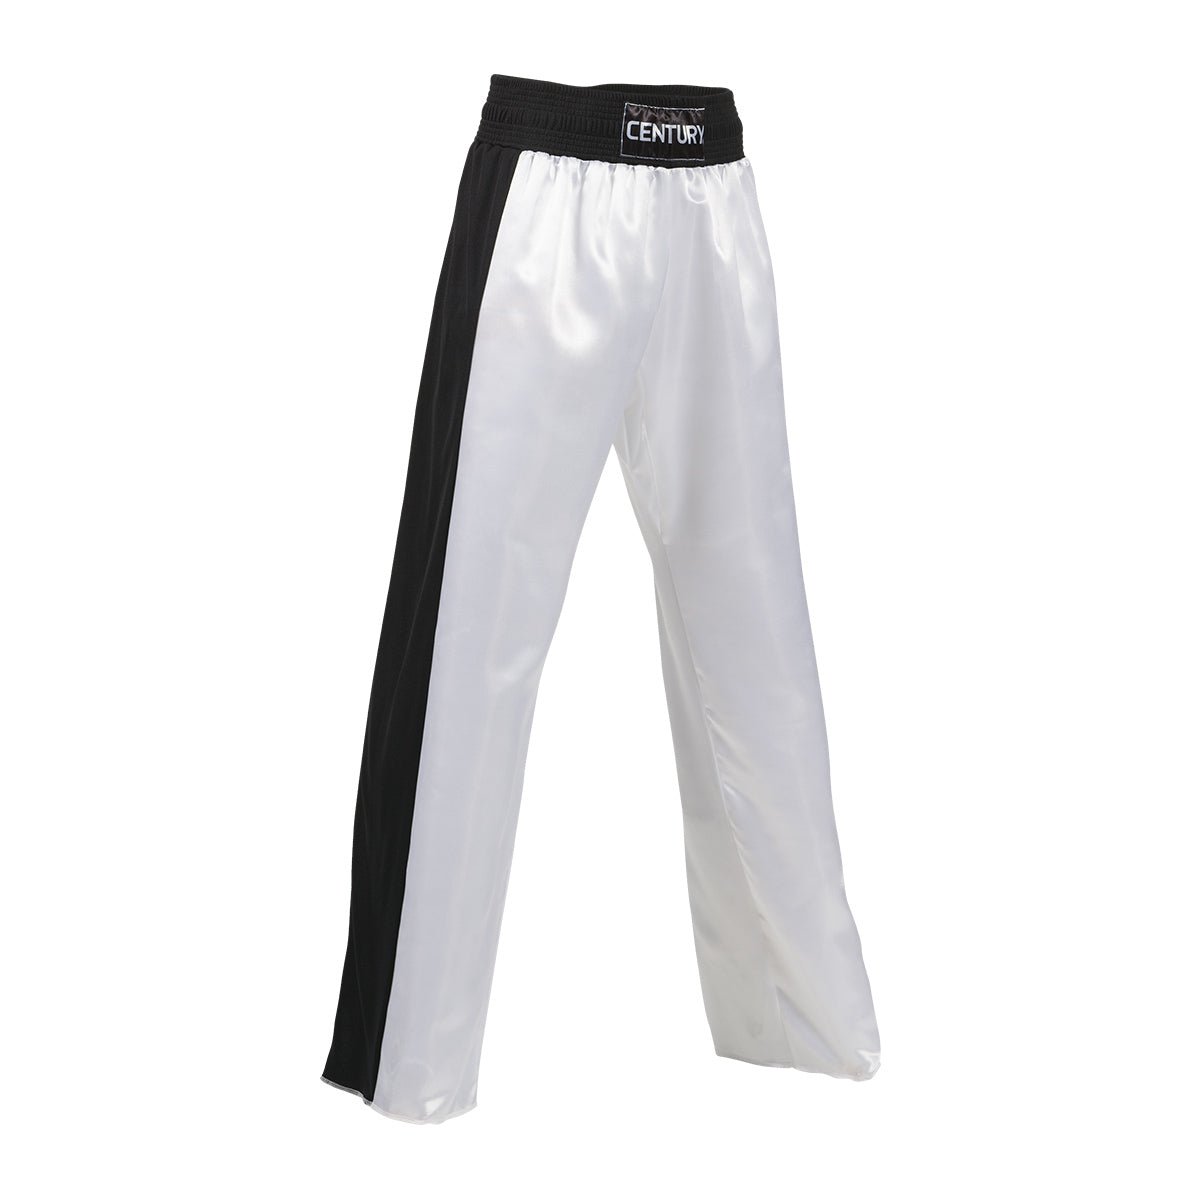 C-Gear Honor Uniform Pant White Black